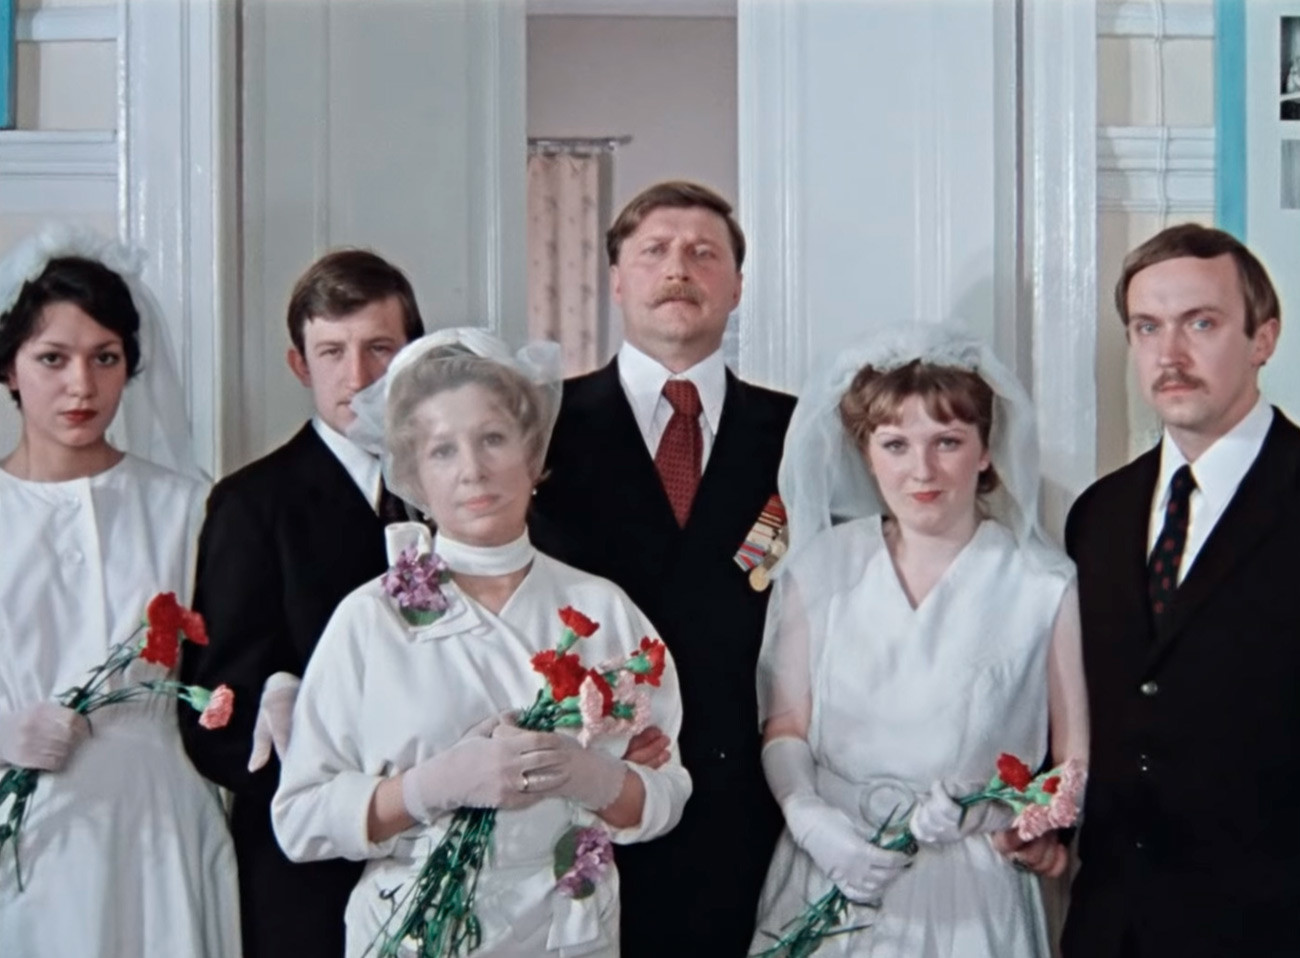 ミハイル・カザコフ監督の映画「ポクロフの門」の結婚式の場面